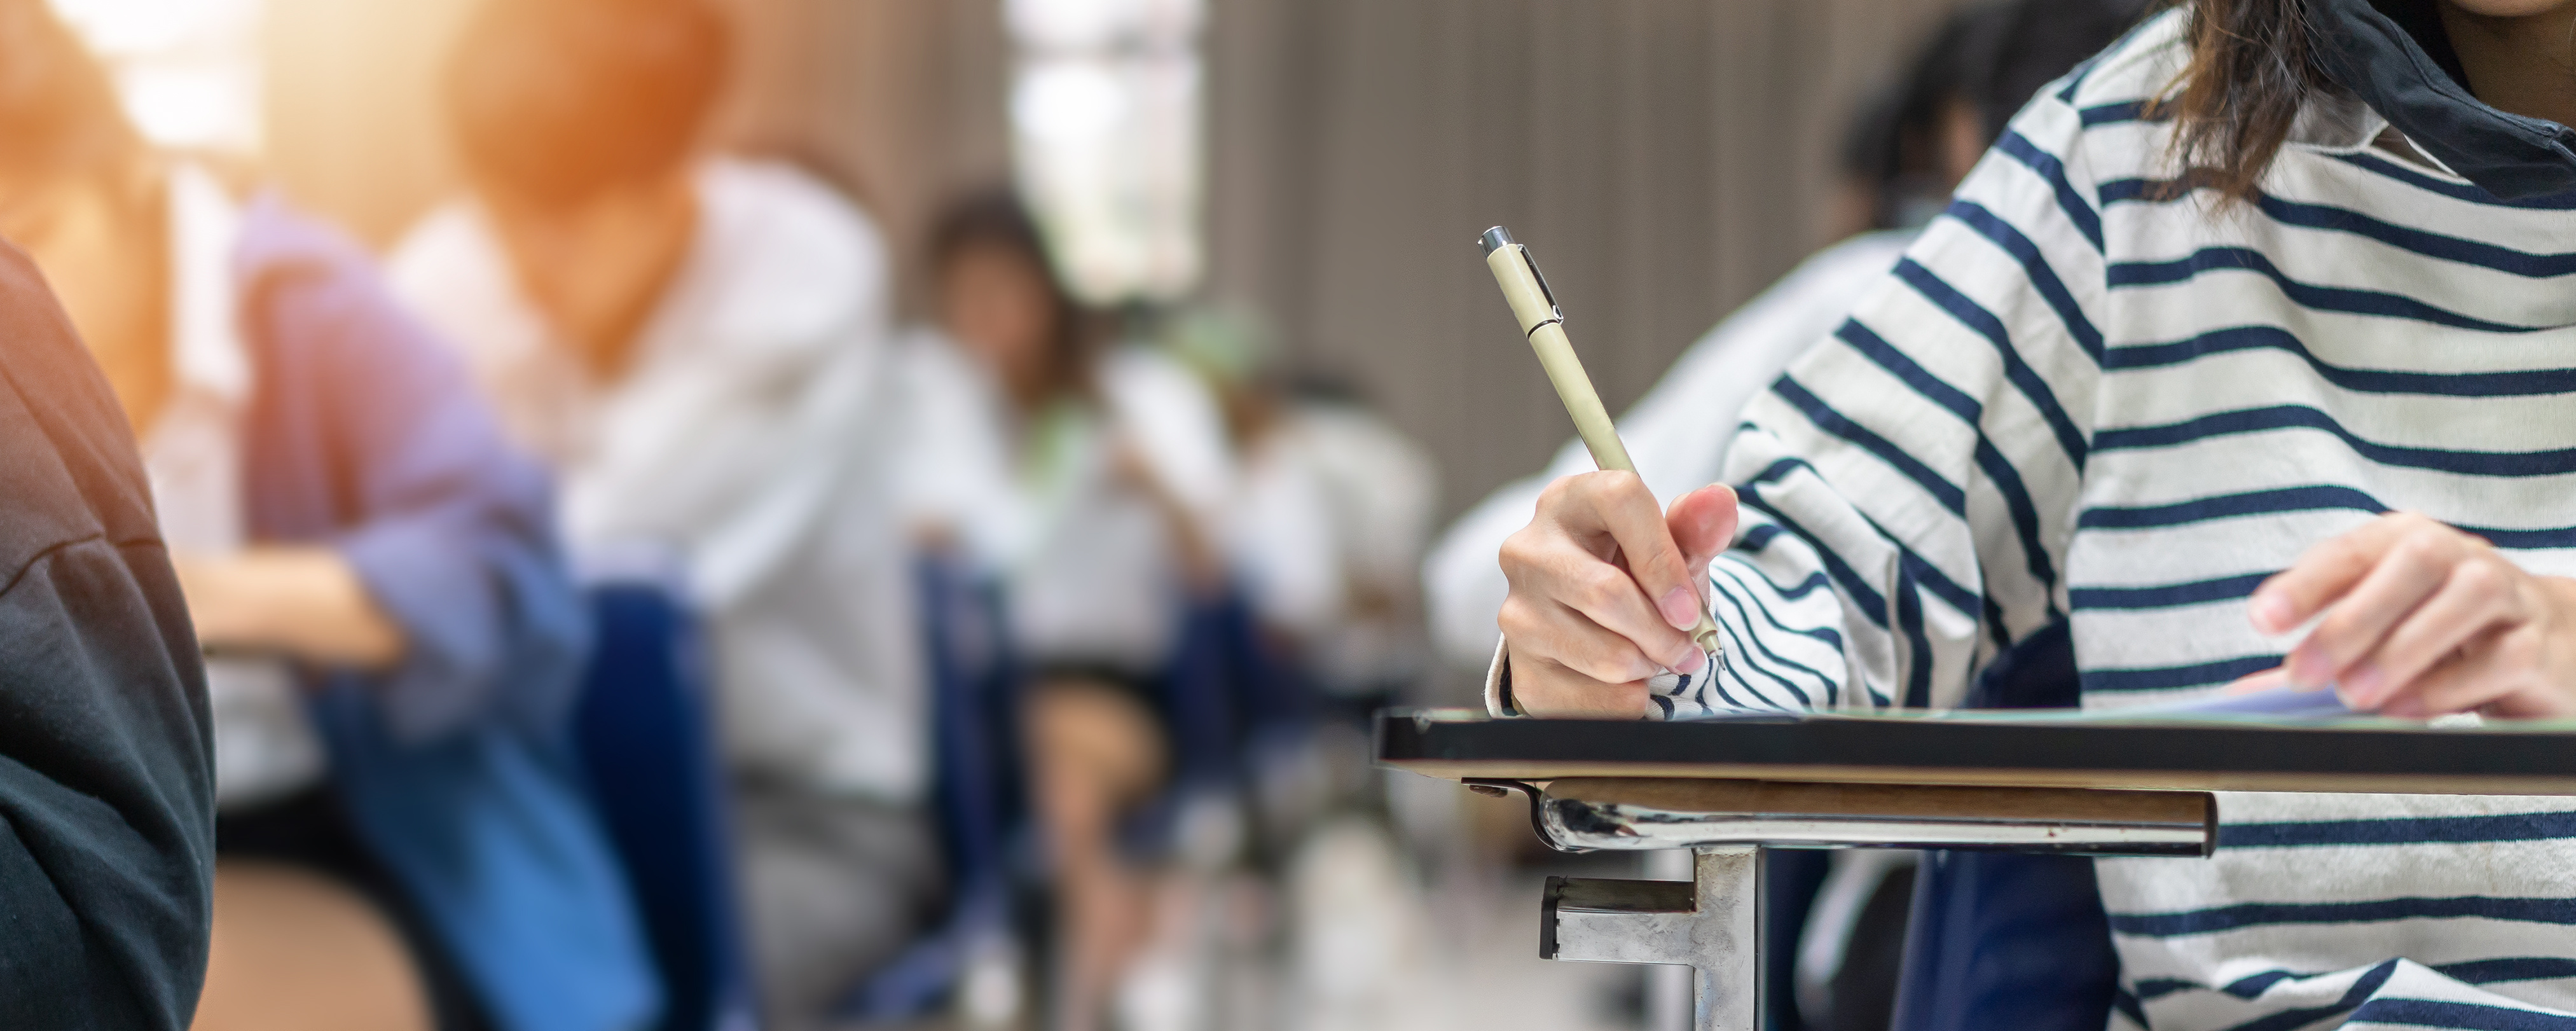 Imagem desfocada de uma sala de aula com algumas pessoas sentadas escrevendo.